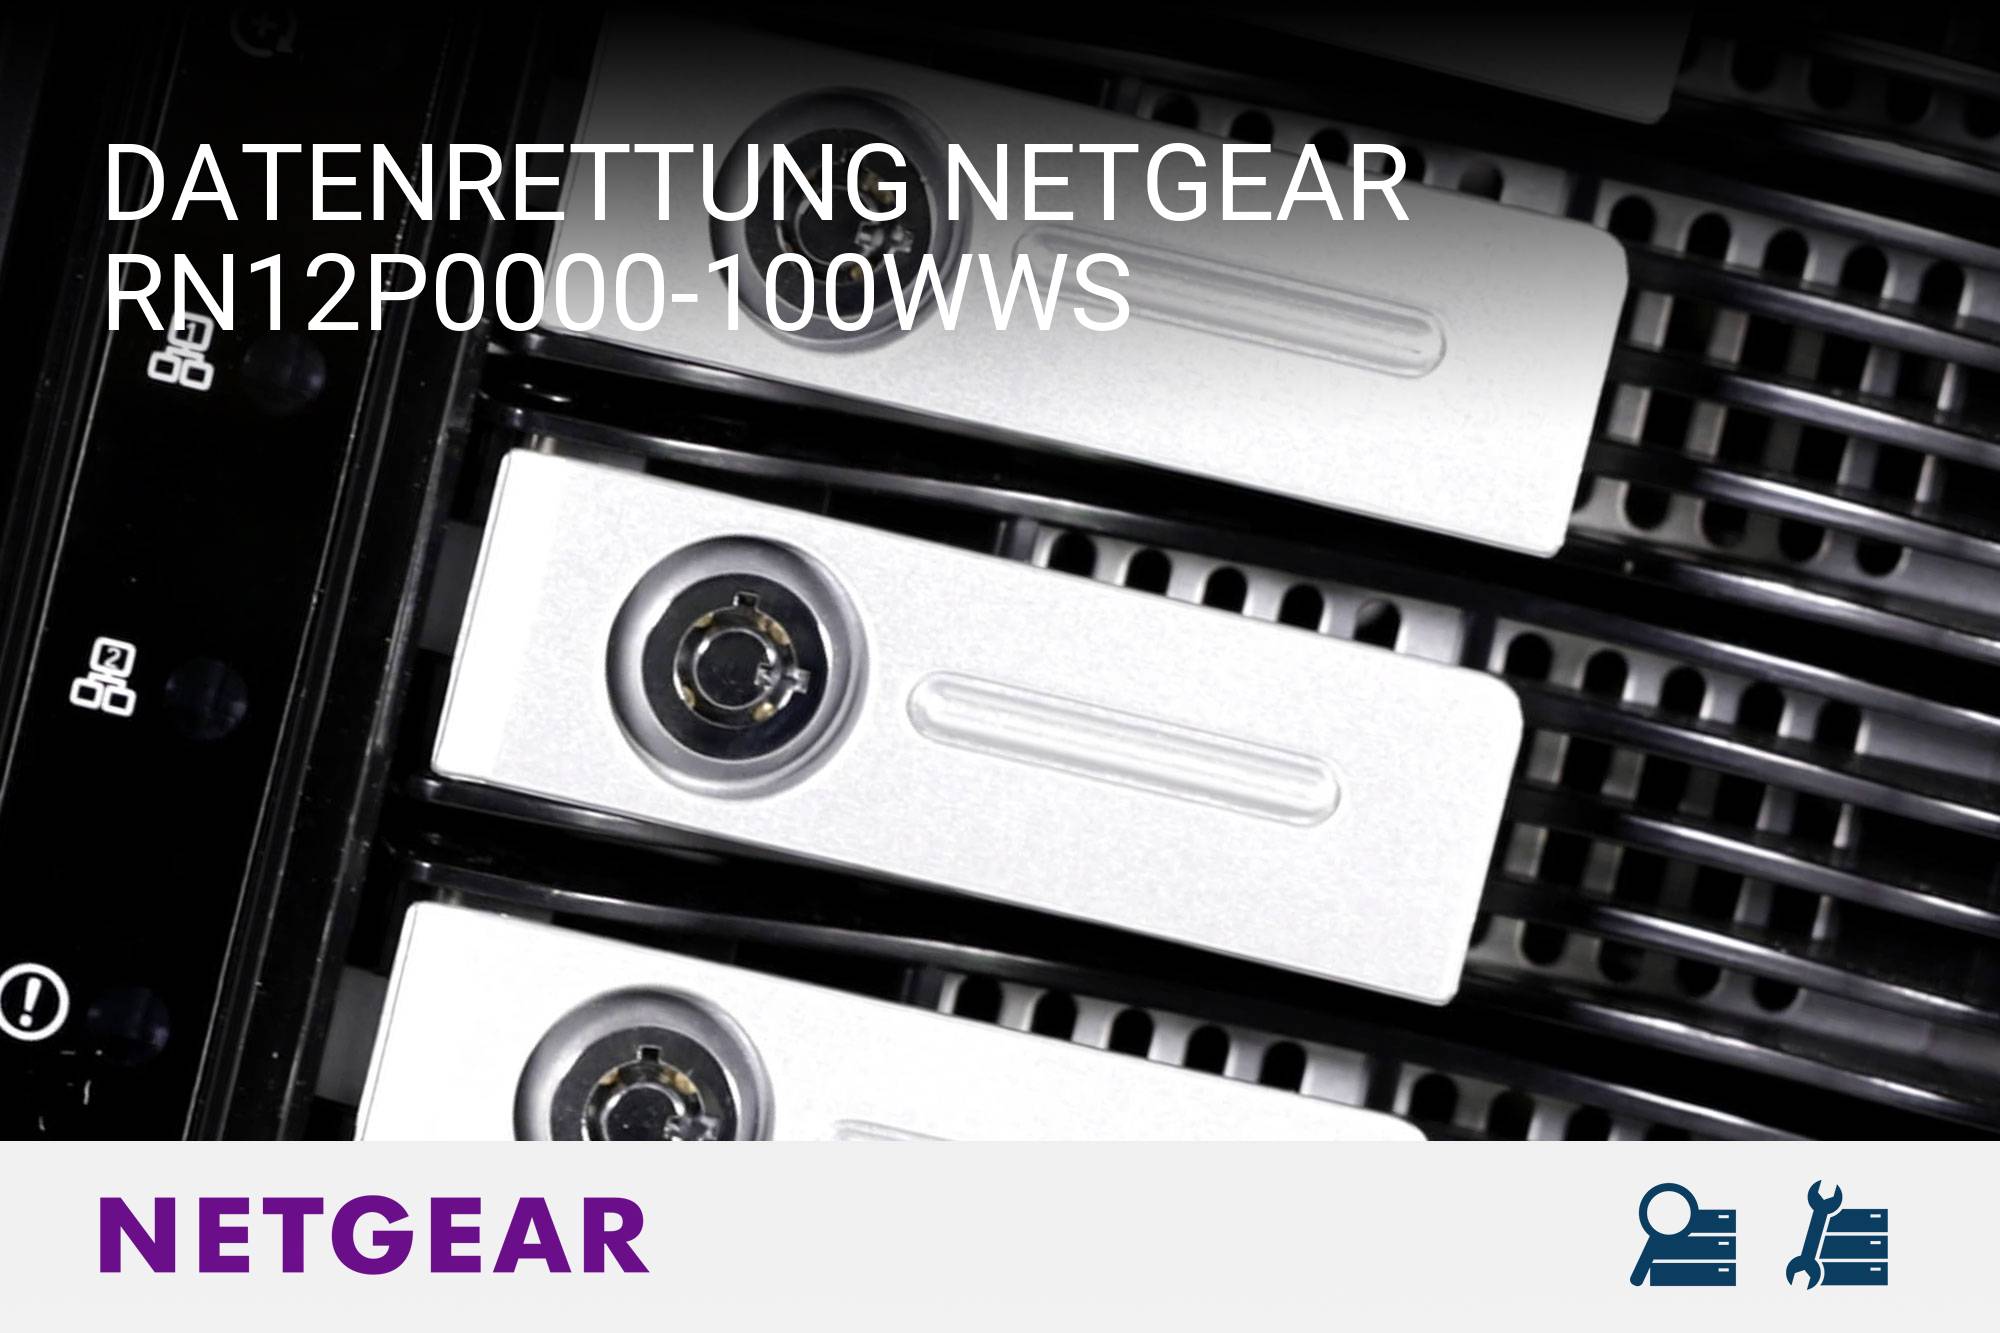 Netgear RN12P0000-100WWS